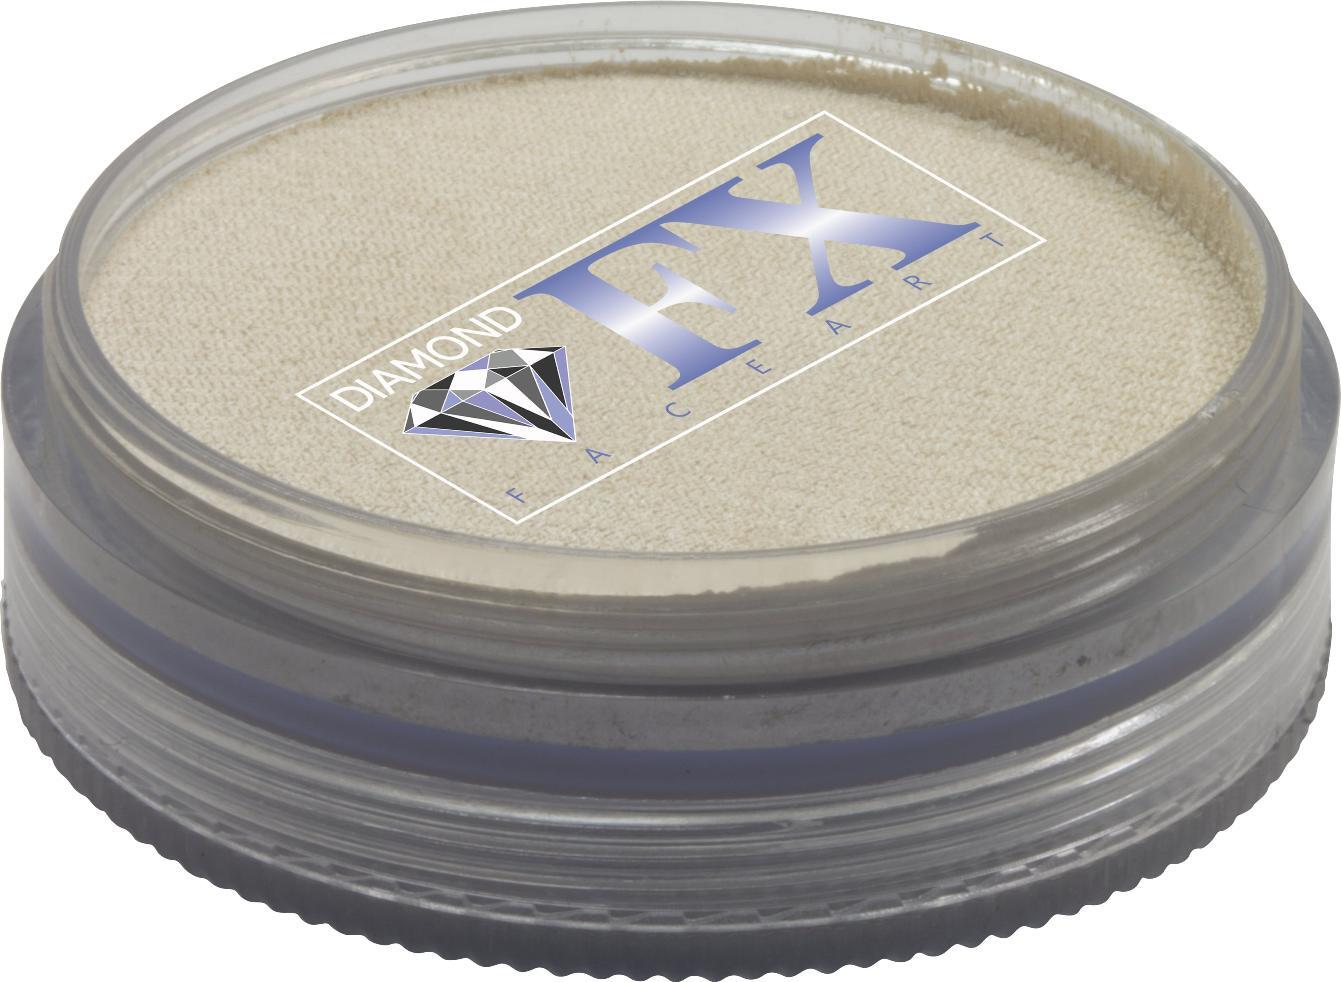 Diamond FX White Metallic 45g - Small Image